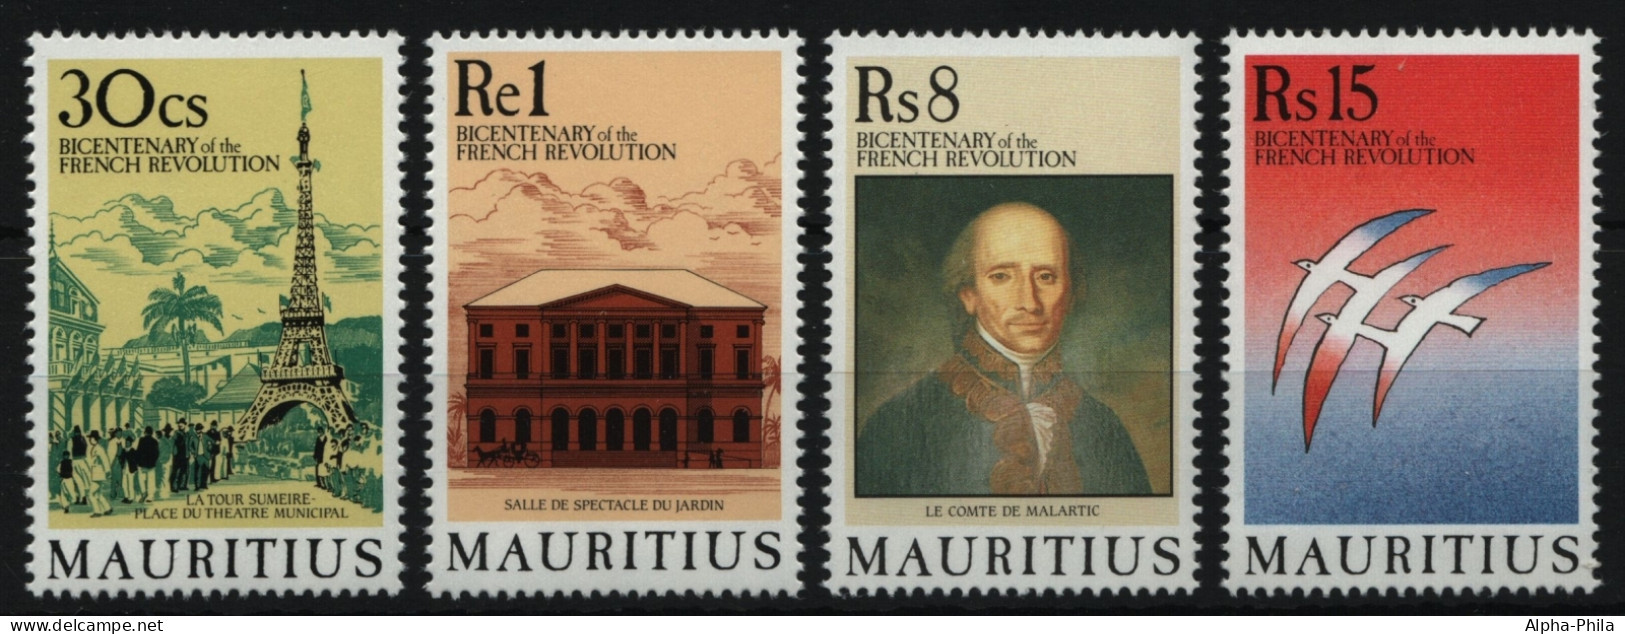 Mauritius 1989 - Mi-Nr. 683-686 ** - MNH - Französische Revolution - Maurice (1968-...)